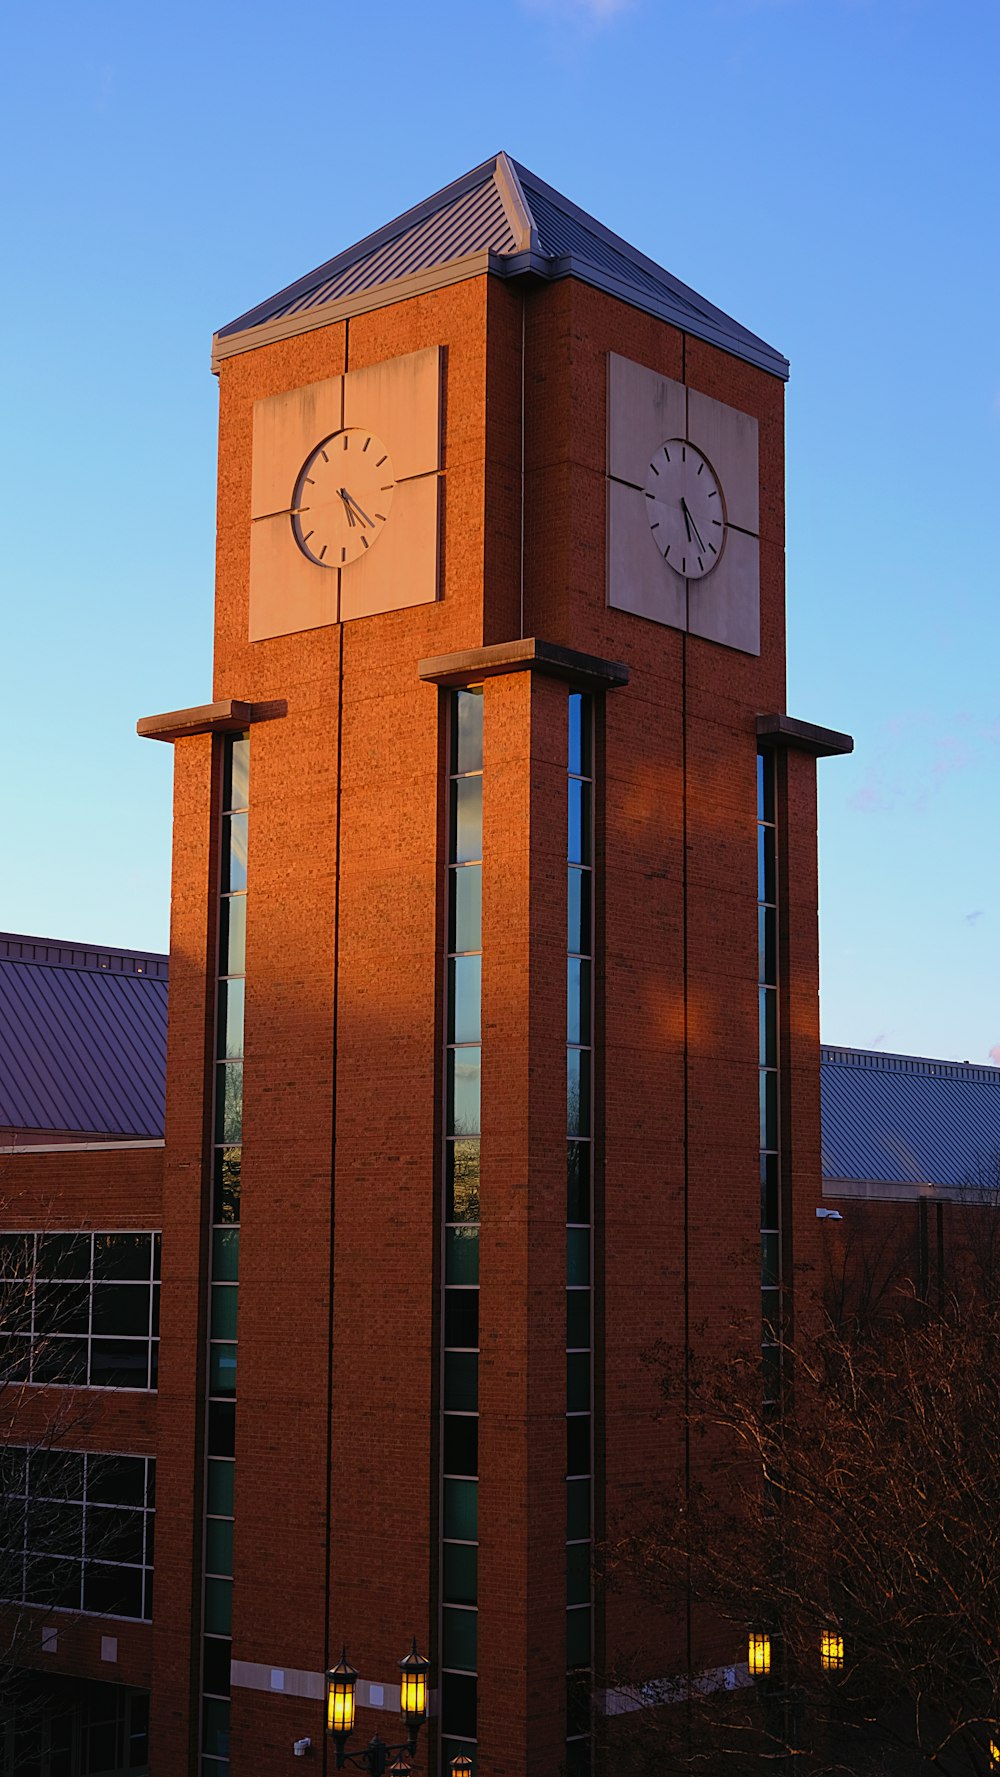 un'alta torre dell'orologio in mattoni con un orologio su ciascuno dei suoi lati